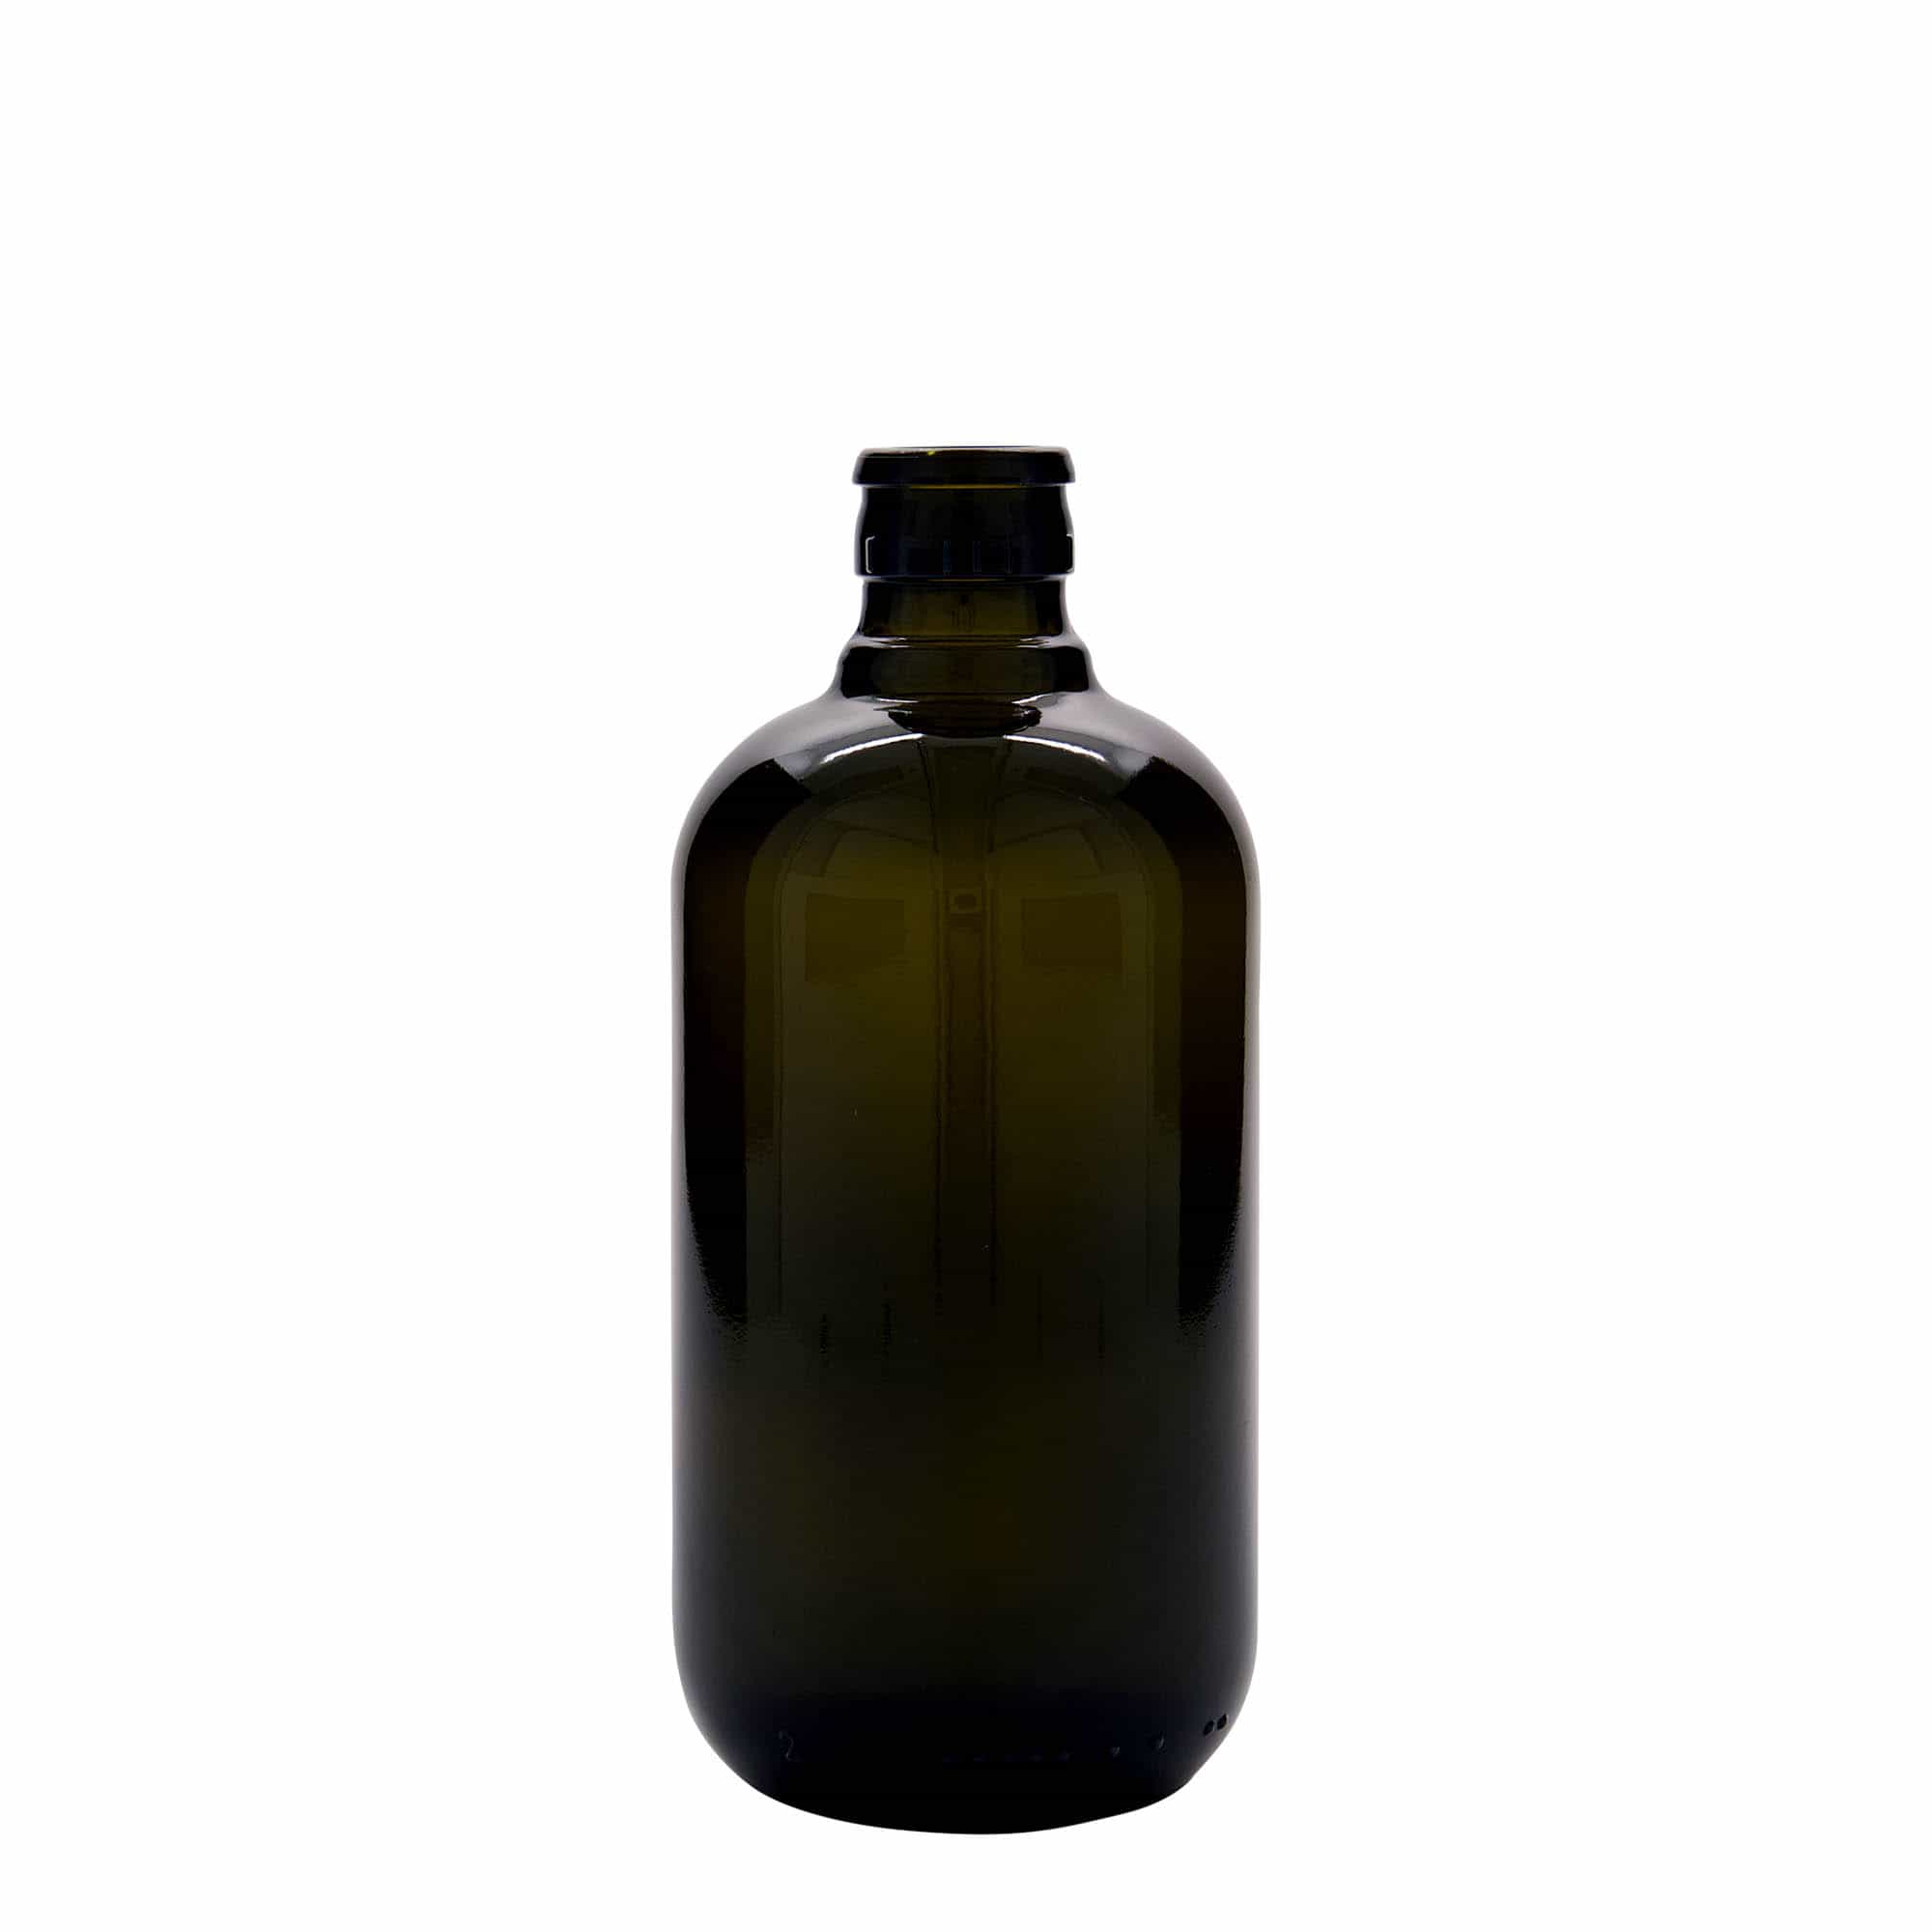 Lahev na ocet/olej 500 ml 'Biolio', sklo, starožitná zelená, ústí: DOP